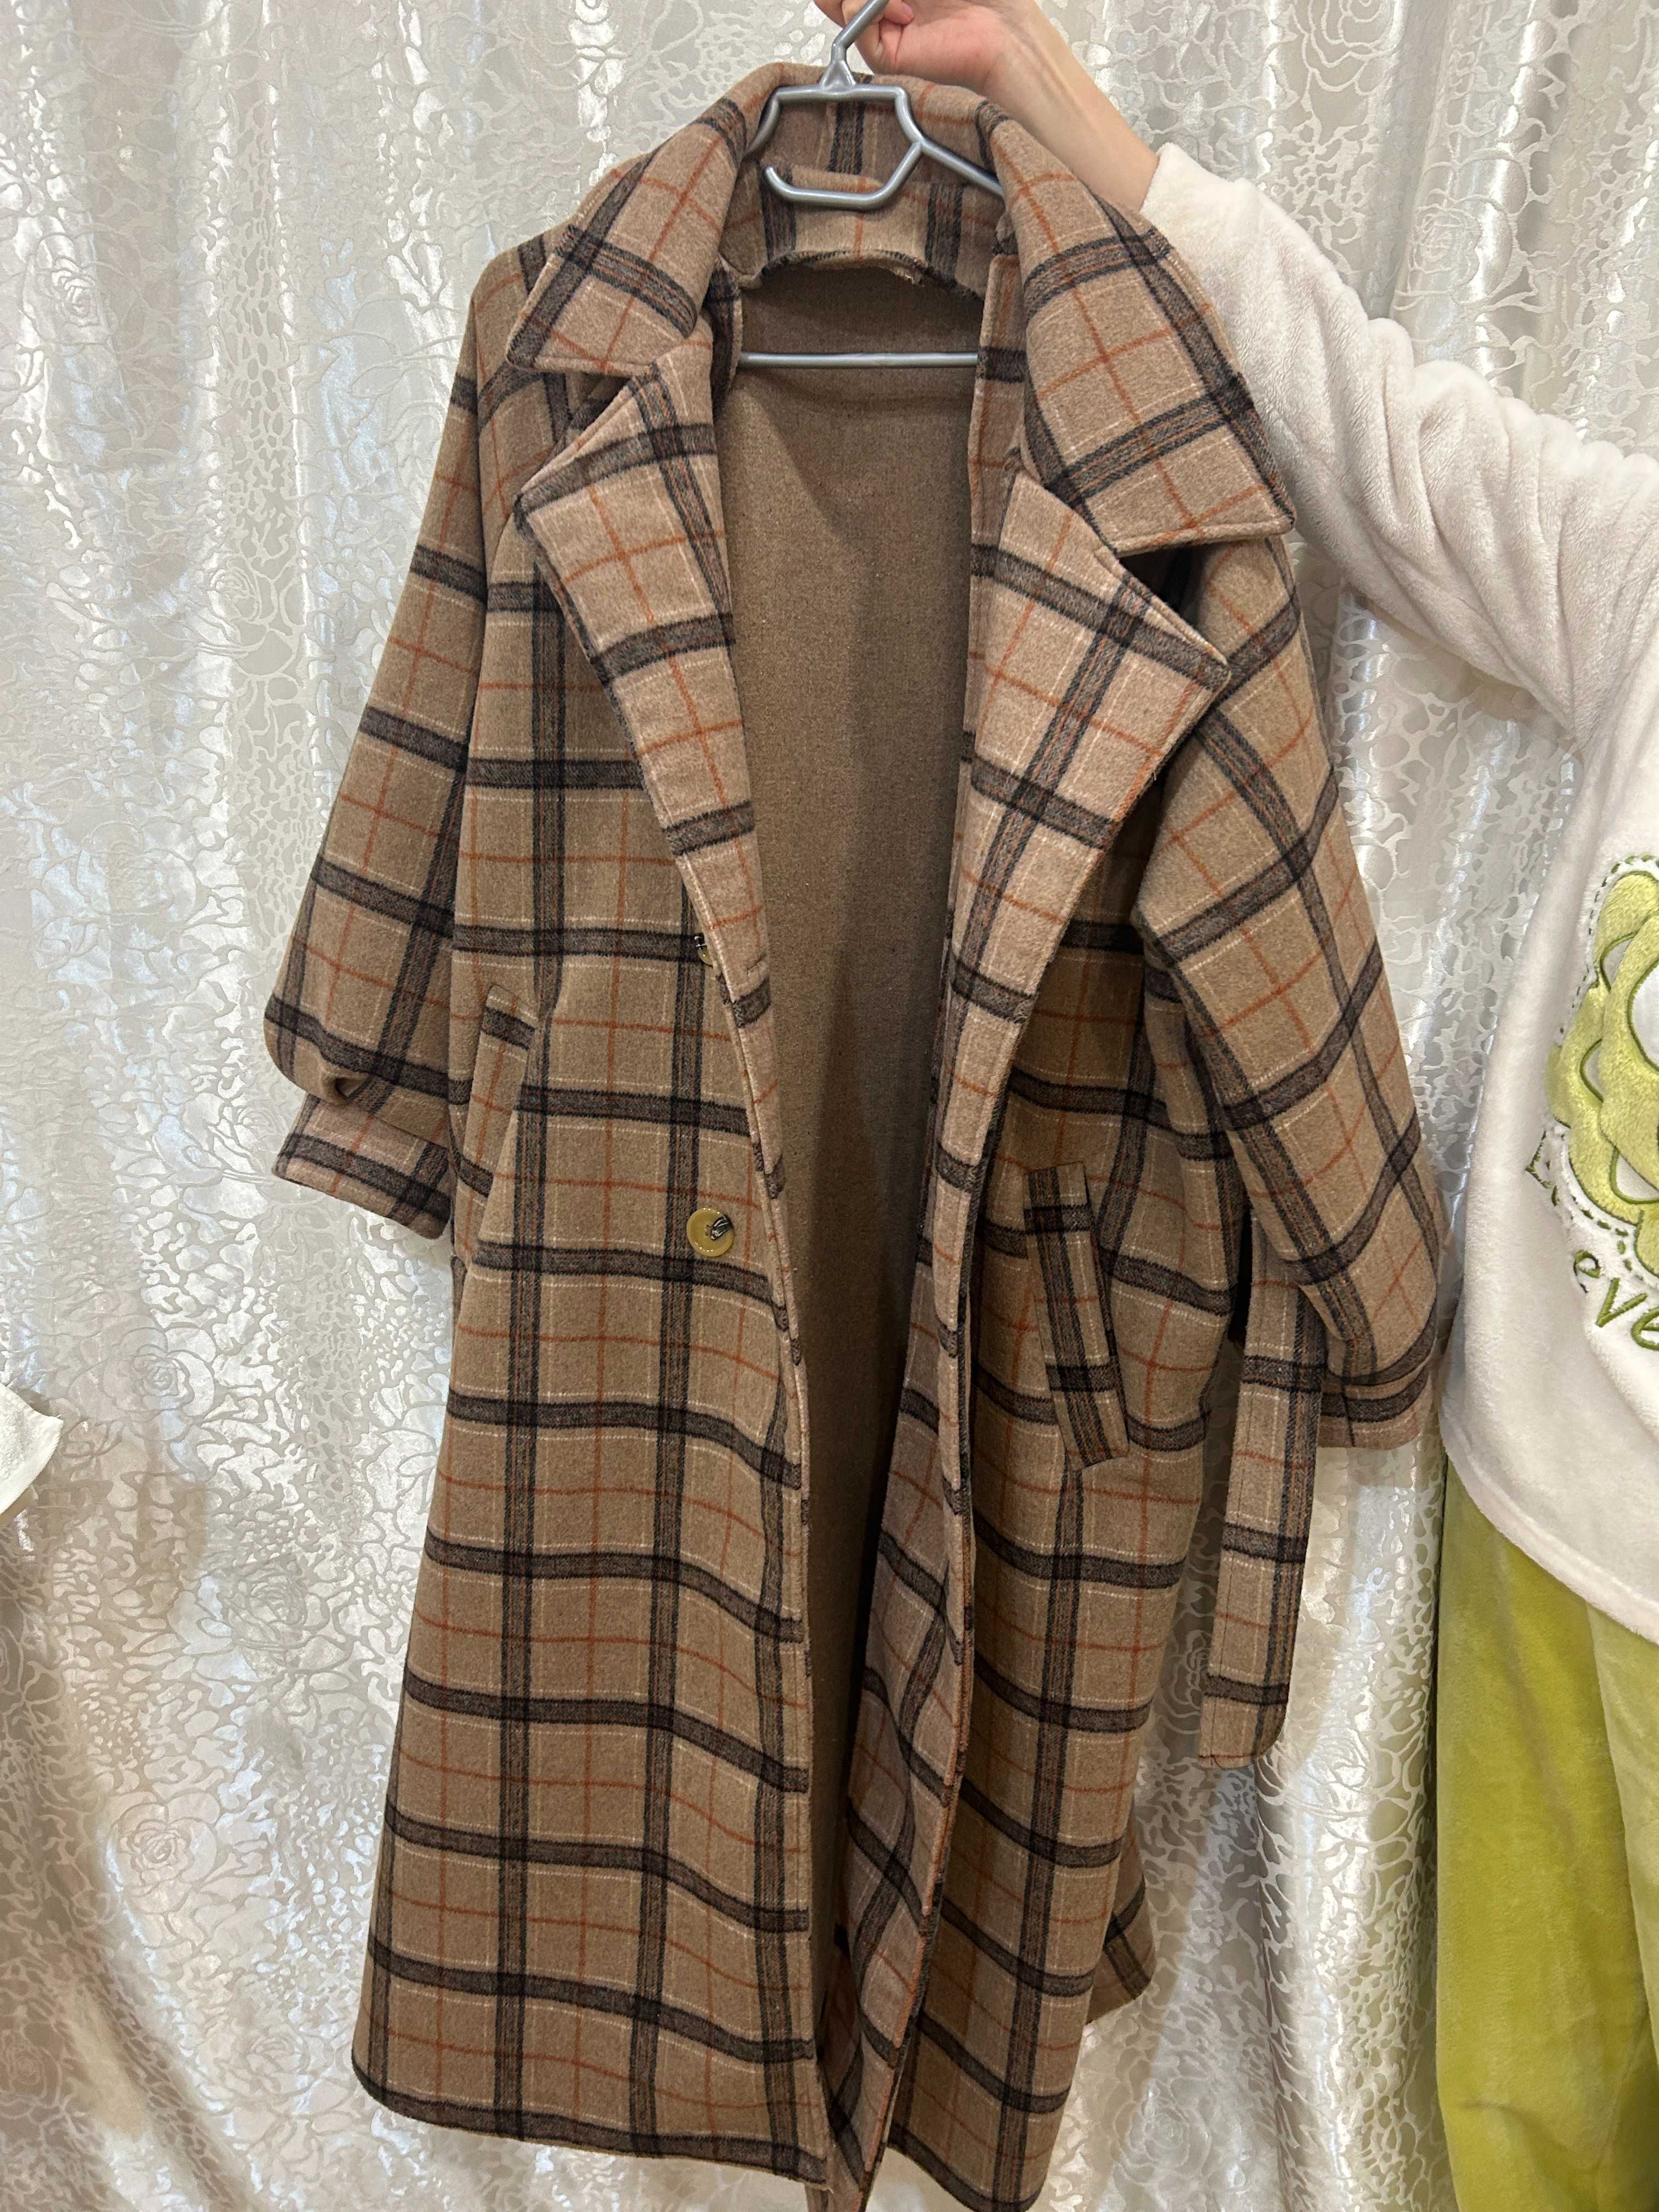 Женское пальто универсального размера, цвет хаки, производство Китай.